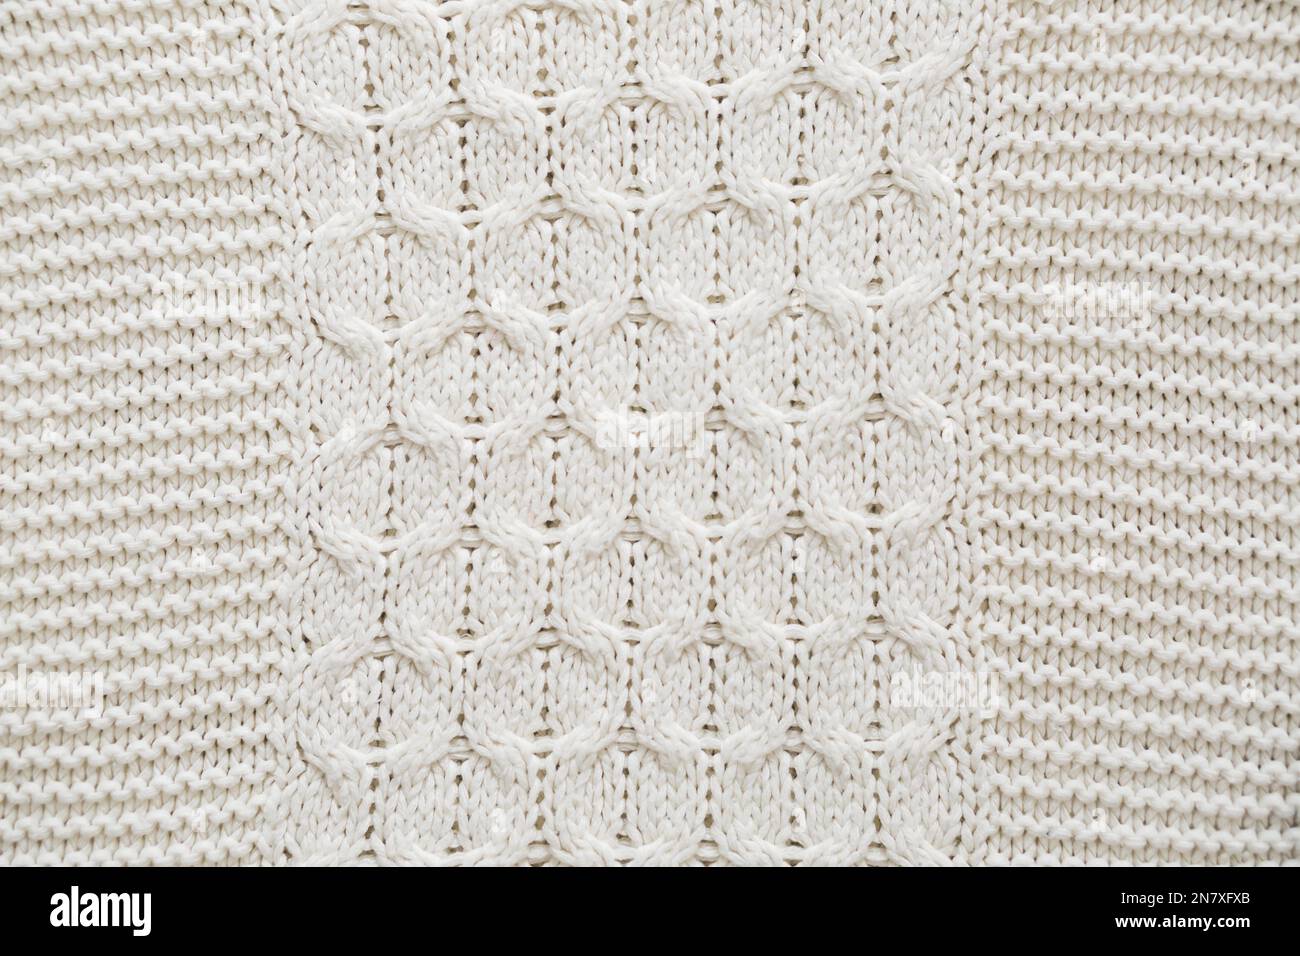 detail knitted sweatshirt Stock Photo